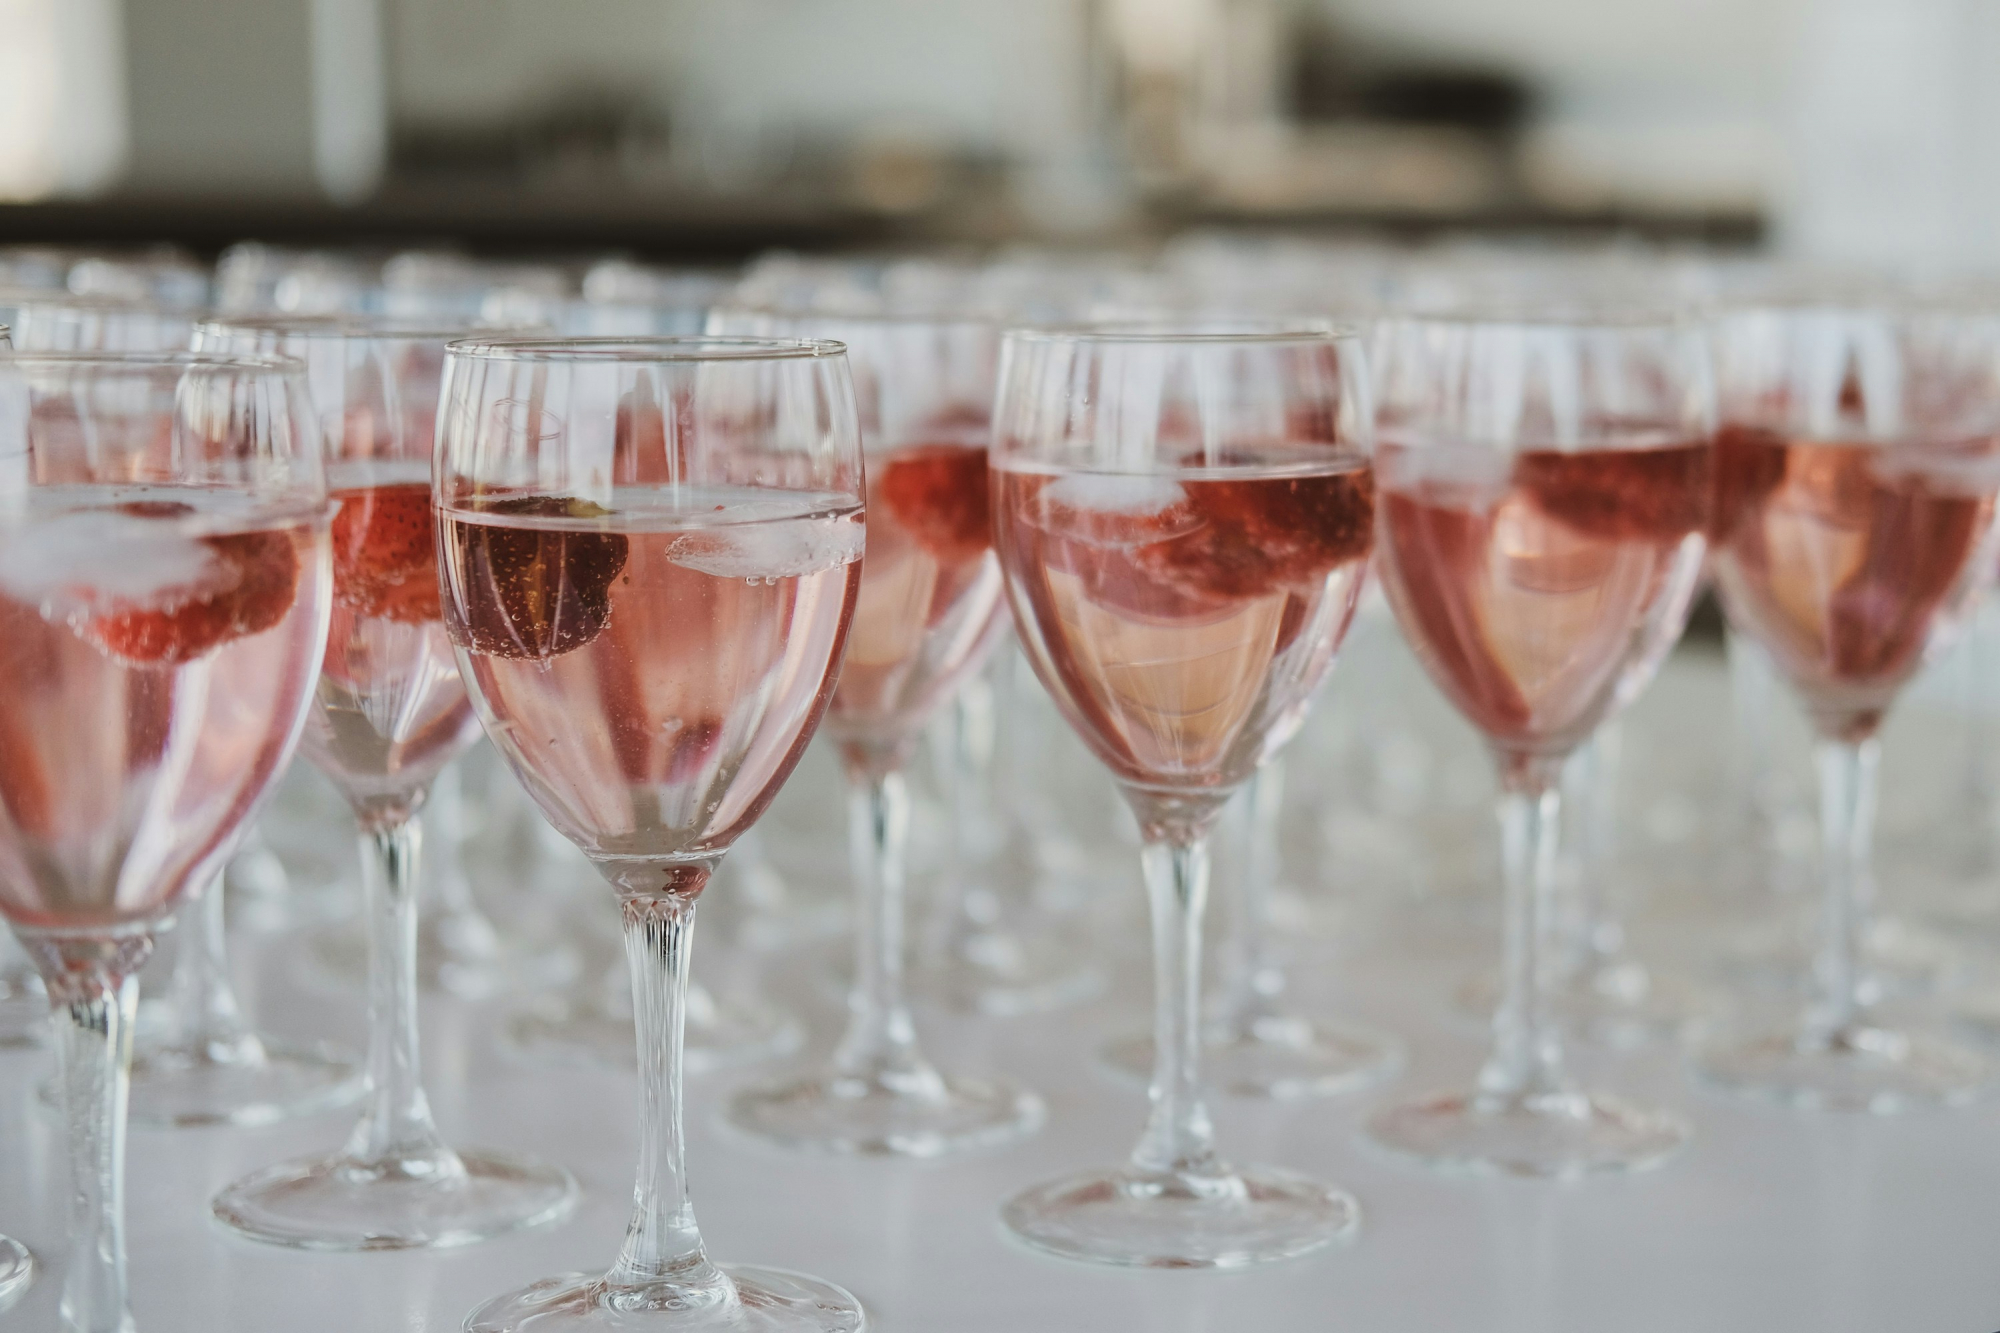 découvrez une sélection de délicieux vins rosés pour accompagner vos repas et vos moments de détente. savourez la fraîcheur et l'élégance des vins rosés de qualité.